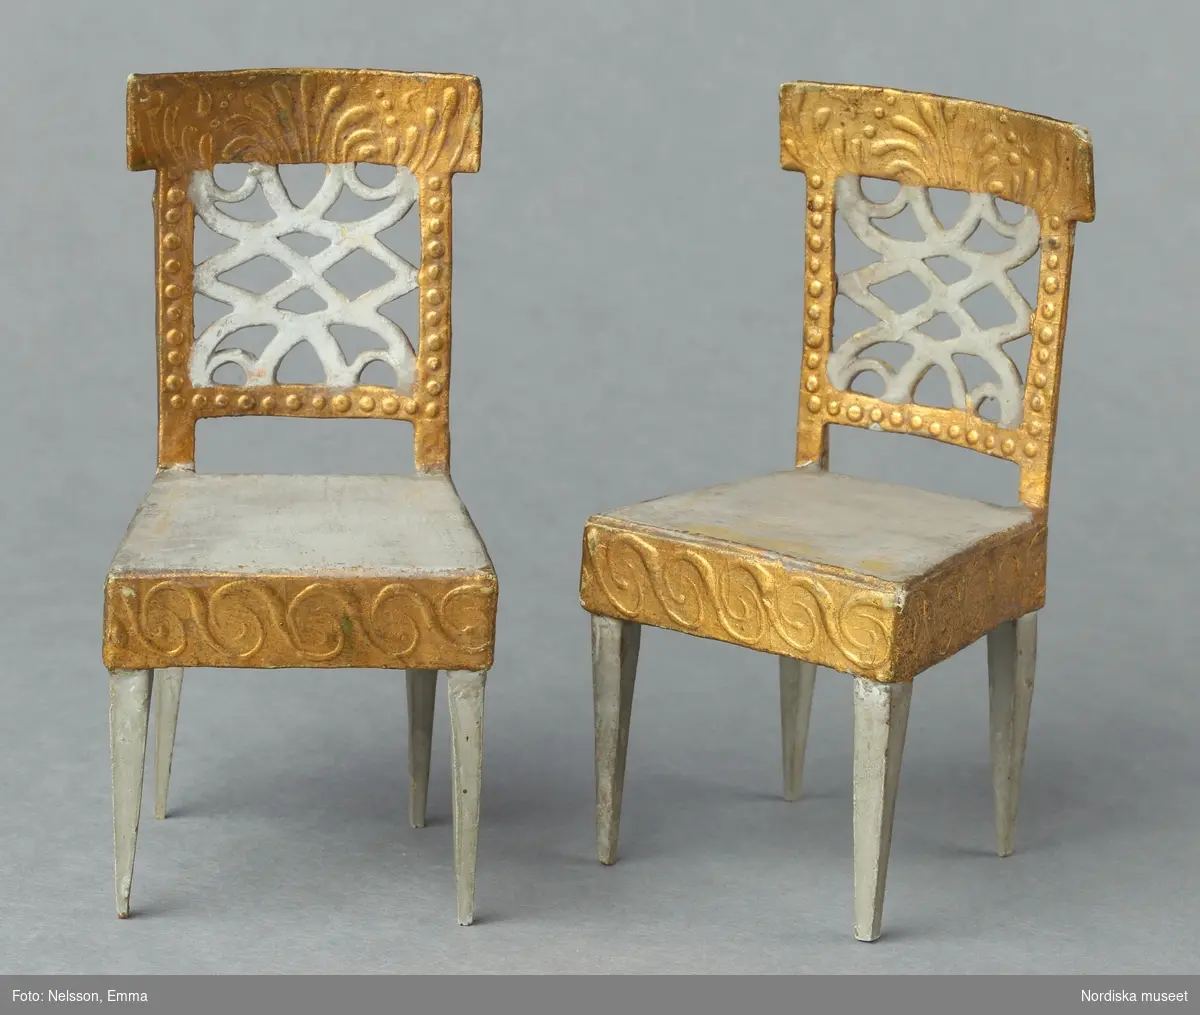 Inventering Sesam 1996-1999:
H 11,5 cm
4 st stolar till dockskåp tillverkade av trä, papp och massa. Fyra rakt nedåt avsmalnande ben av trä, fyrkantig gråmålad sits, sarg och fyrkantigt genombrutet ryggstöd av papp och massa med reliefmönster i guld och vitt.
Hör till dockskåp 165.280
Bilaga
Leif Wallin 1996